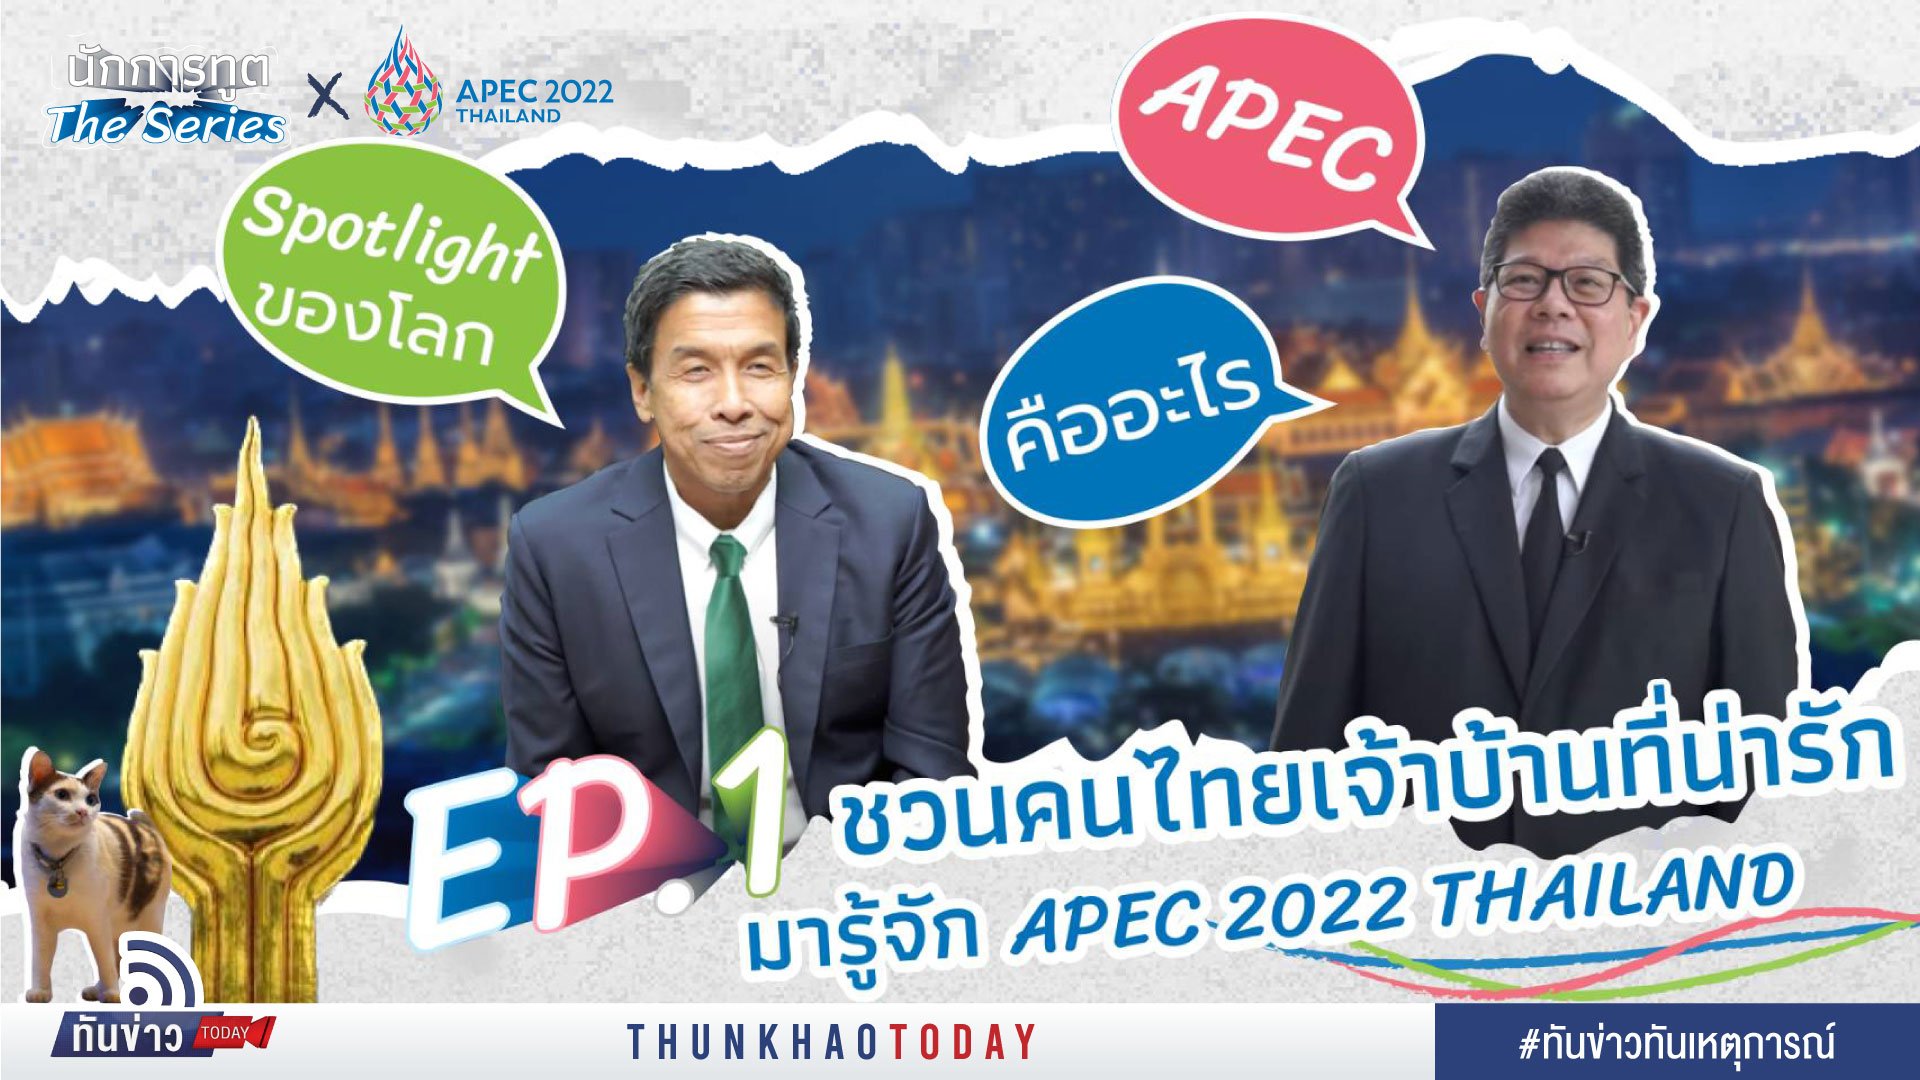 ชวนคนไทยเจ้าบ้านที่น่ารักมารู้จัก APEC 2022 THAILAND